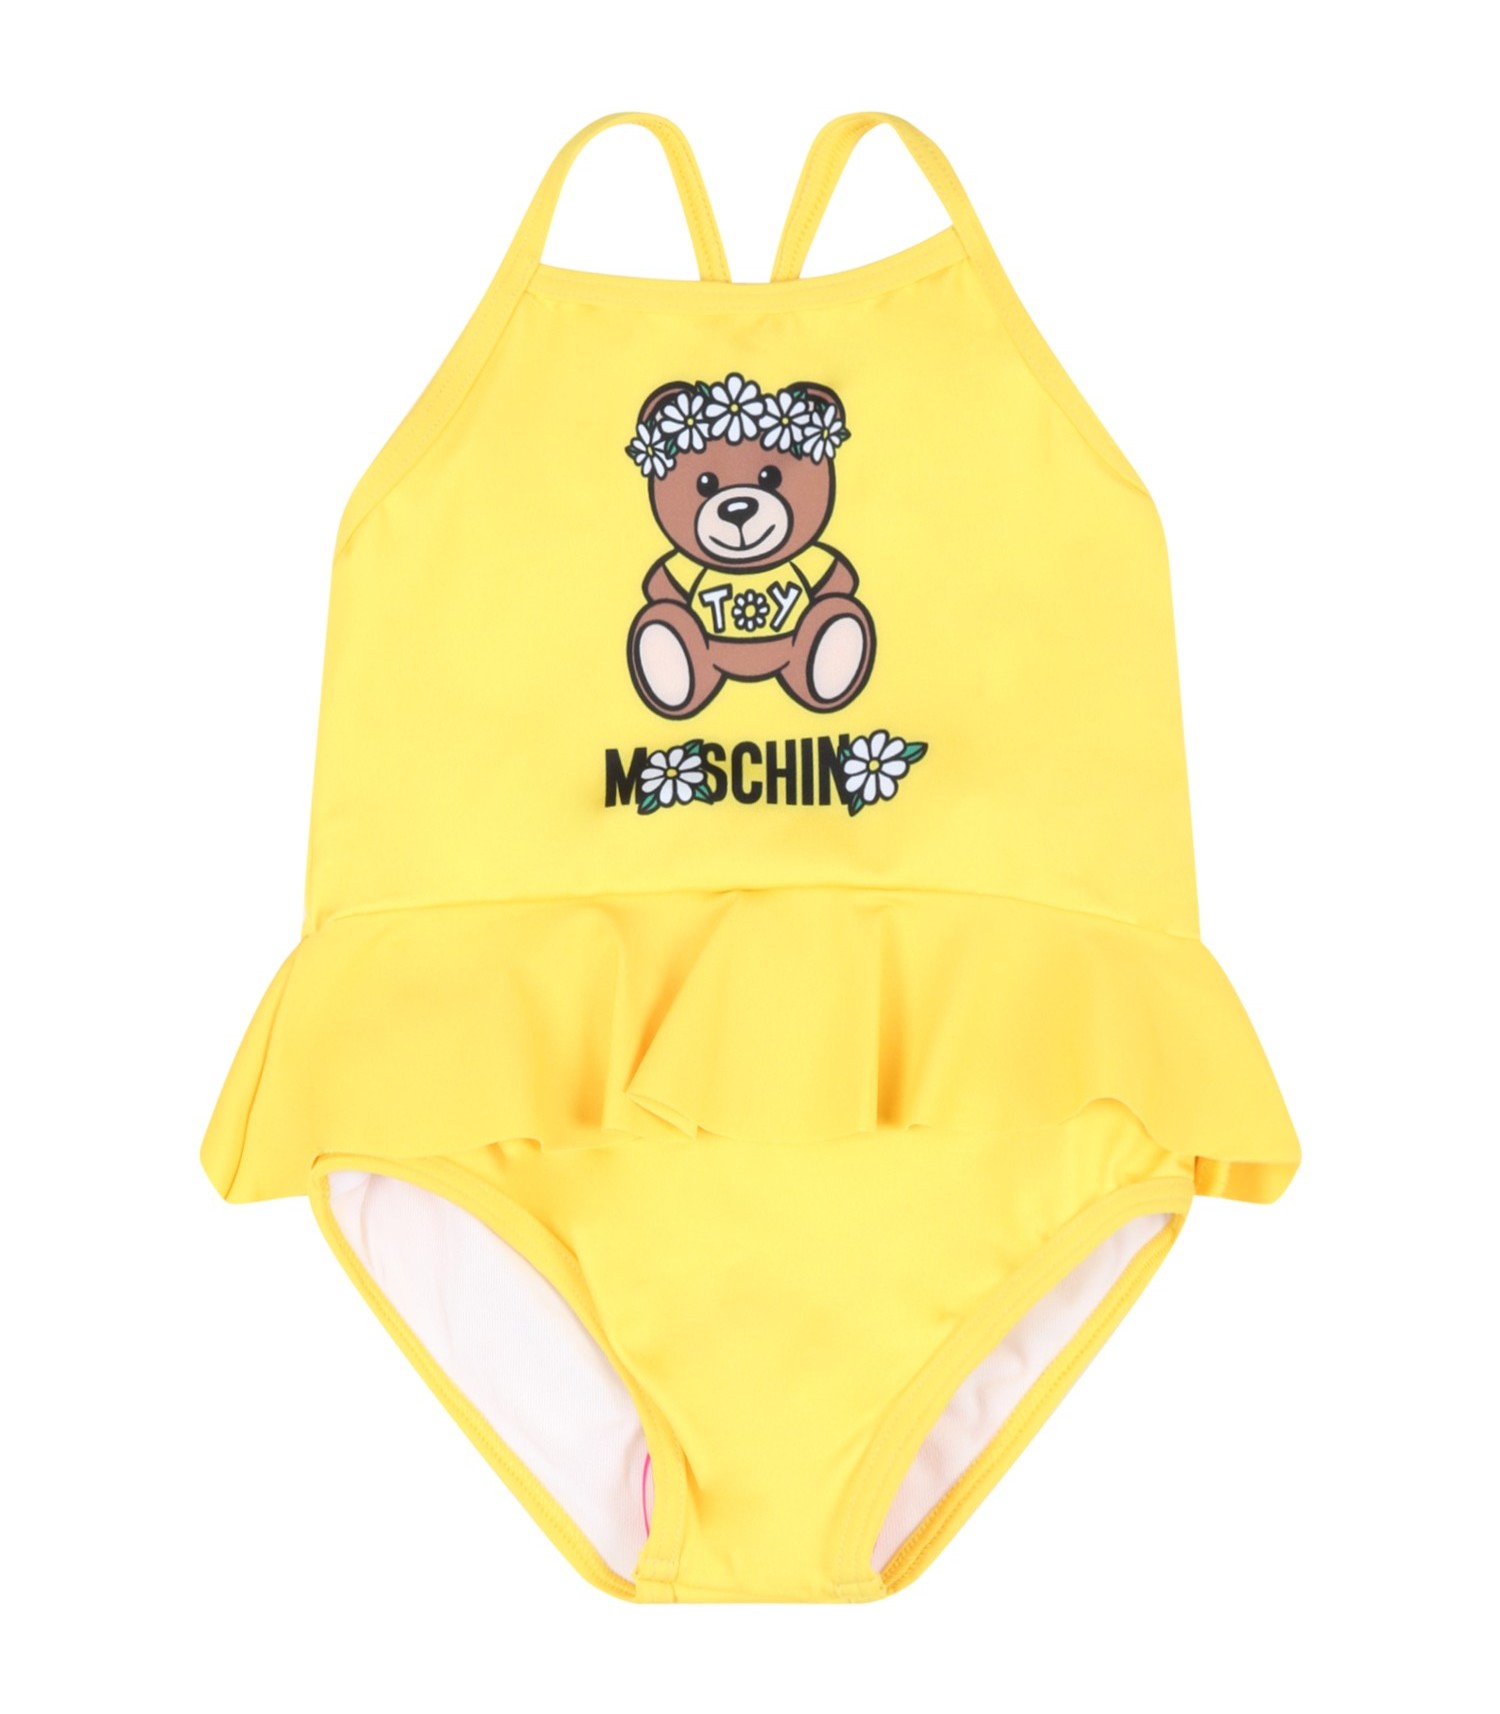 baby girl moschino swimsuit